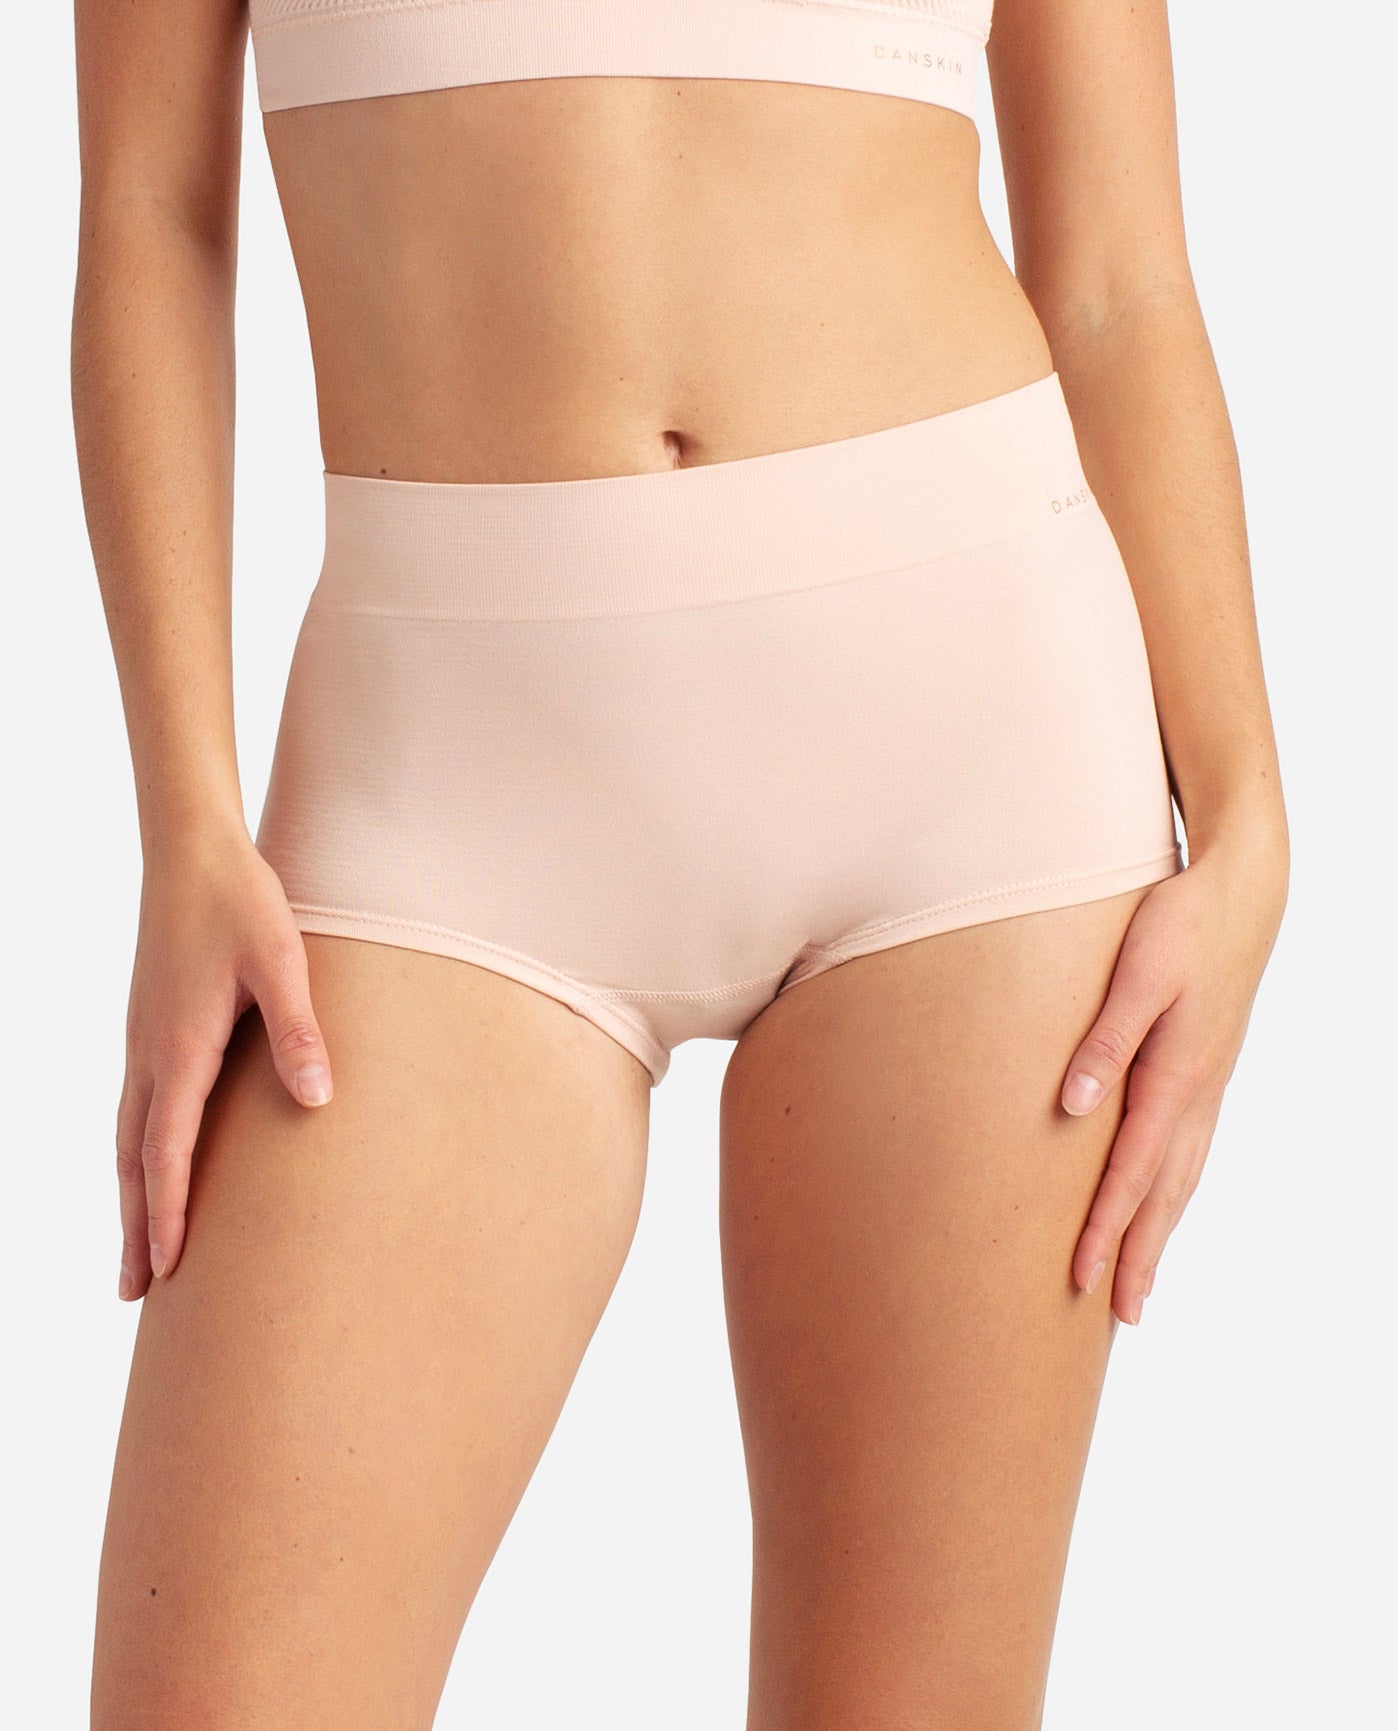  LEITNIAS Women's Seamless Underwear Hipster Panties